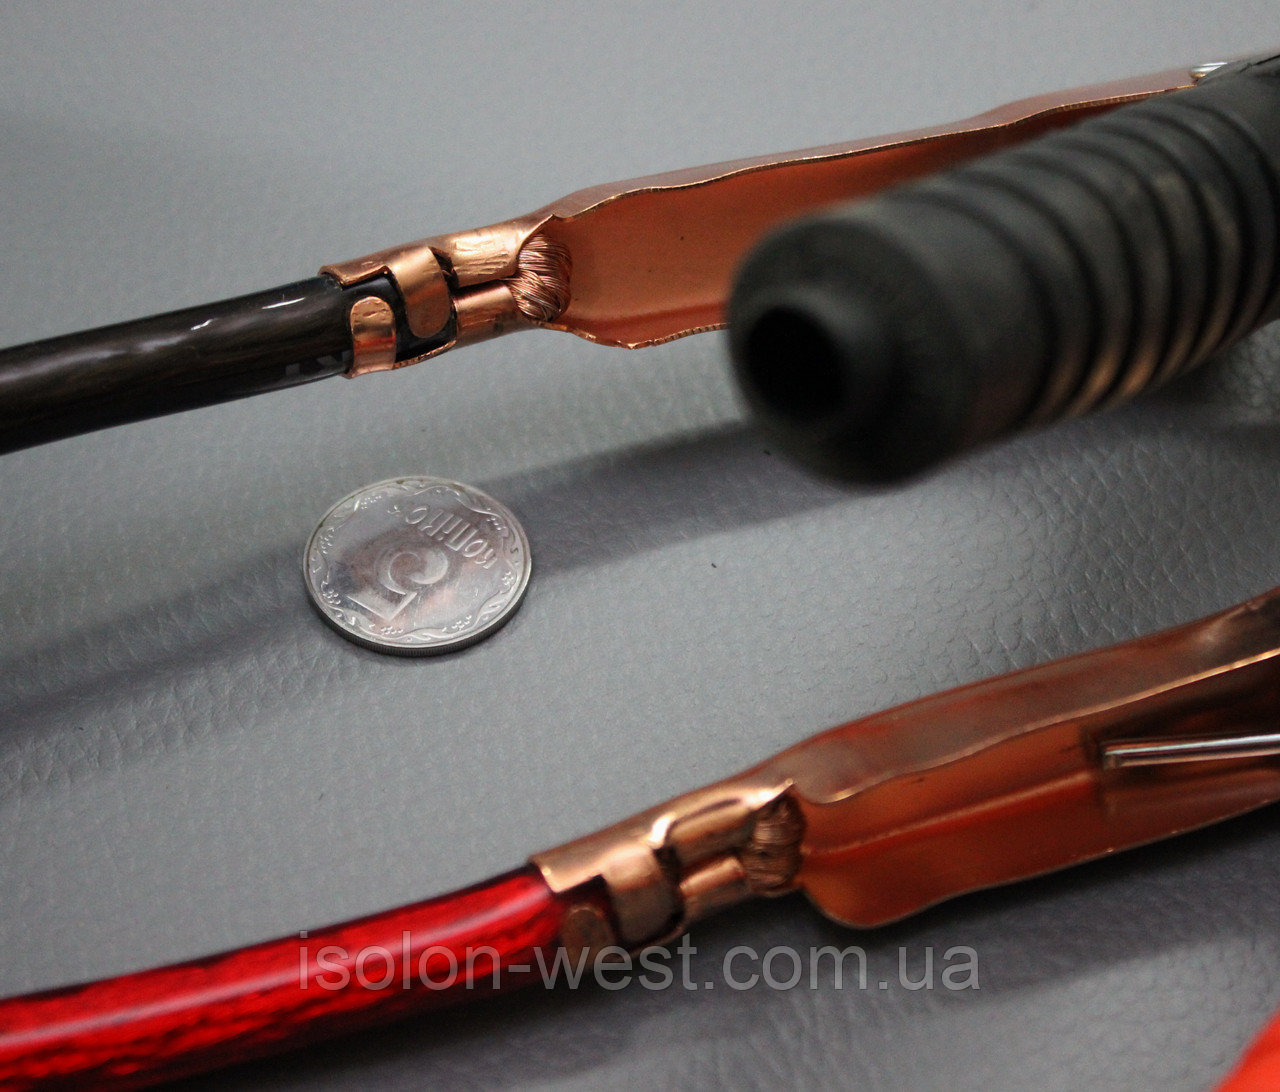 Провода для прикуривания PROFI 350 АI - 2,5 м., стартовые пусковые провода для автомобиля детальная фотка